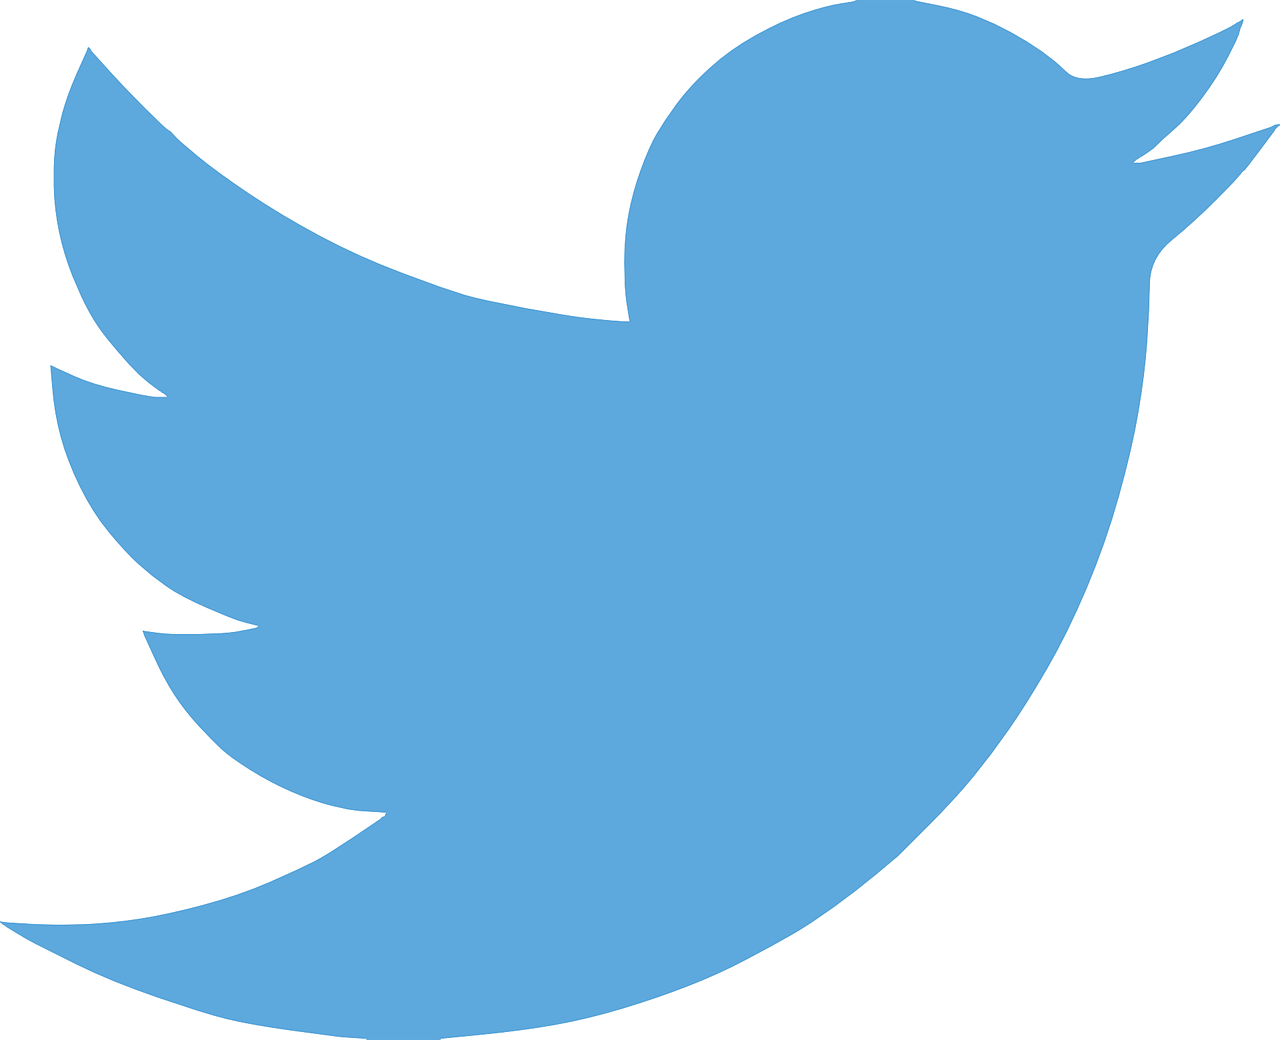 Twitter, Čivināšana, Twitter Paukštis, Socialinis Tinklas, Internetas, Komunikacija, Socialinis, Žiniasklaida, Pranešimų Siuntimas, Bendrauti